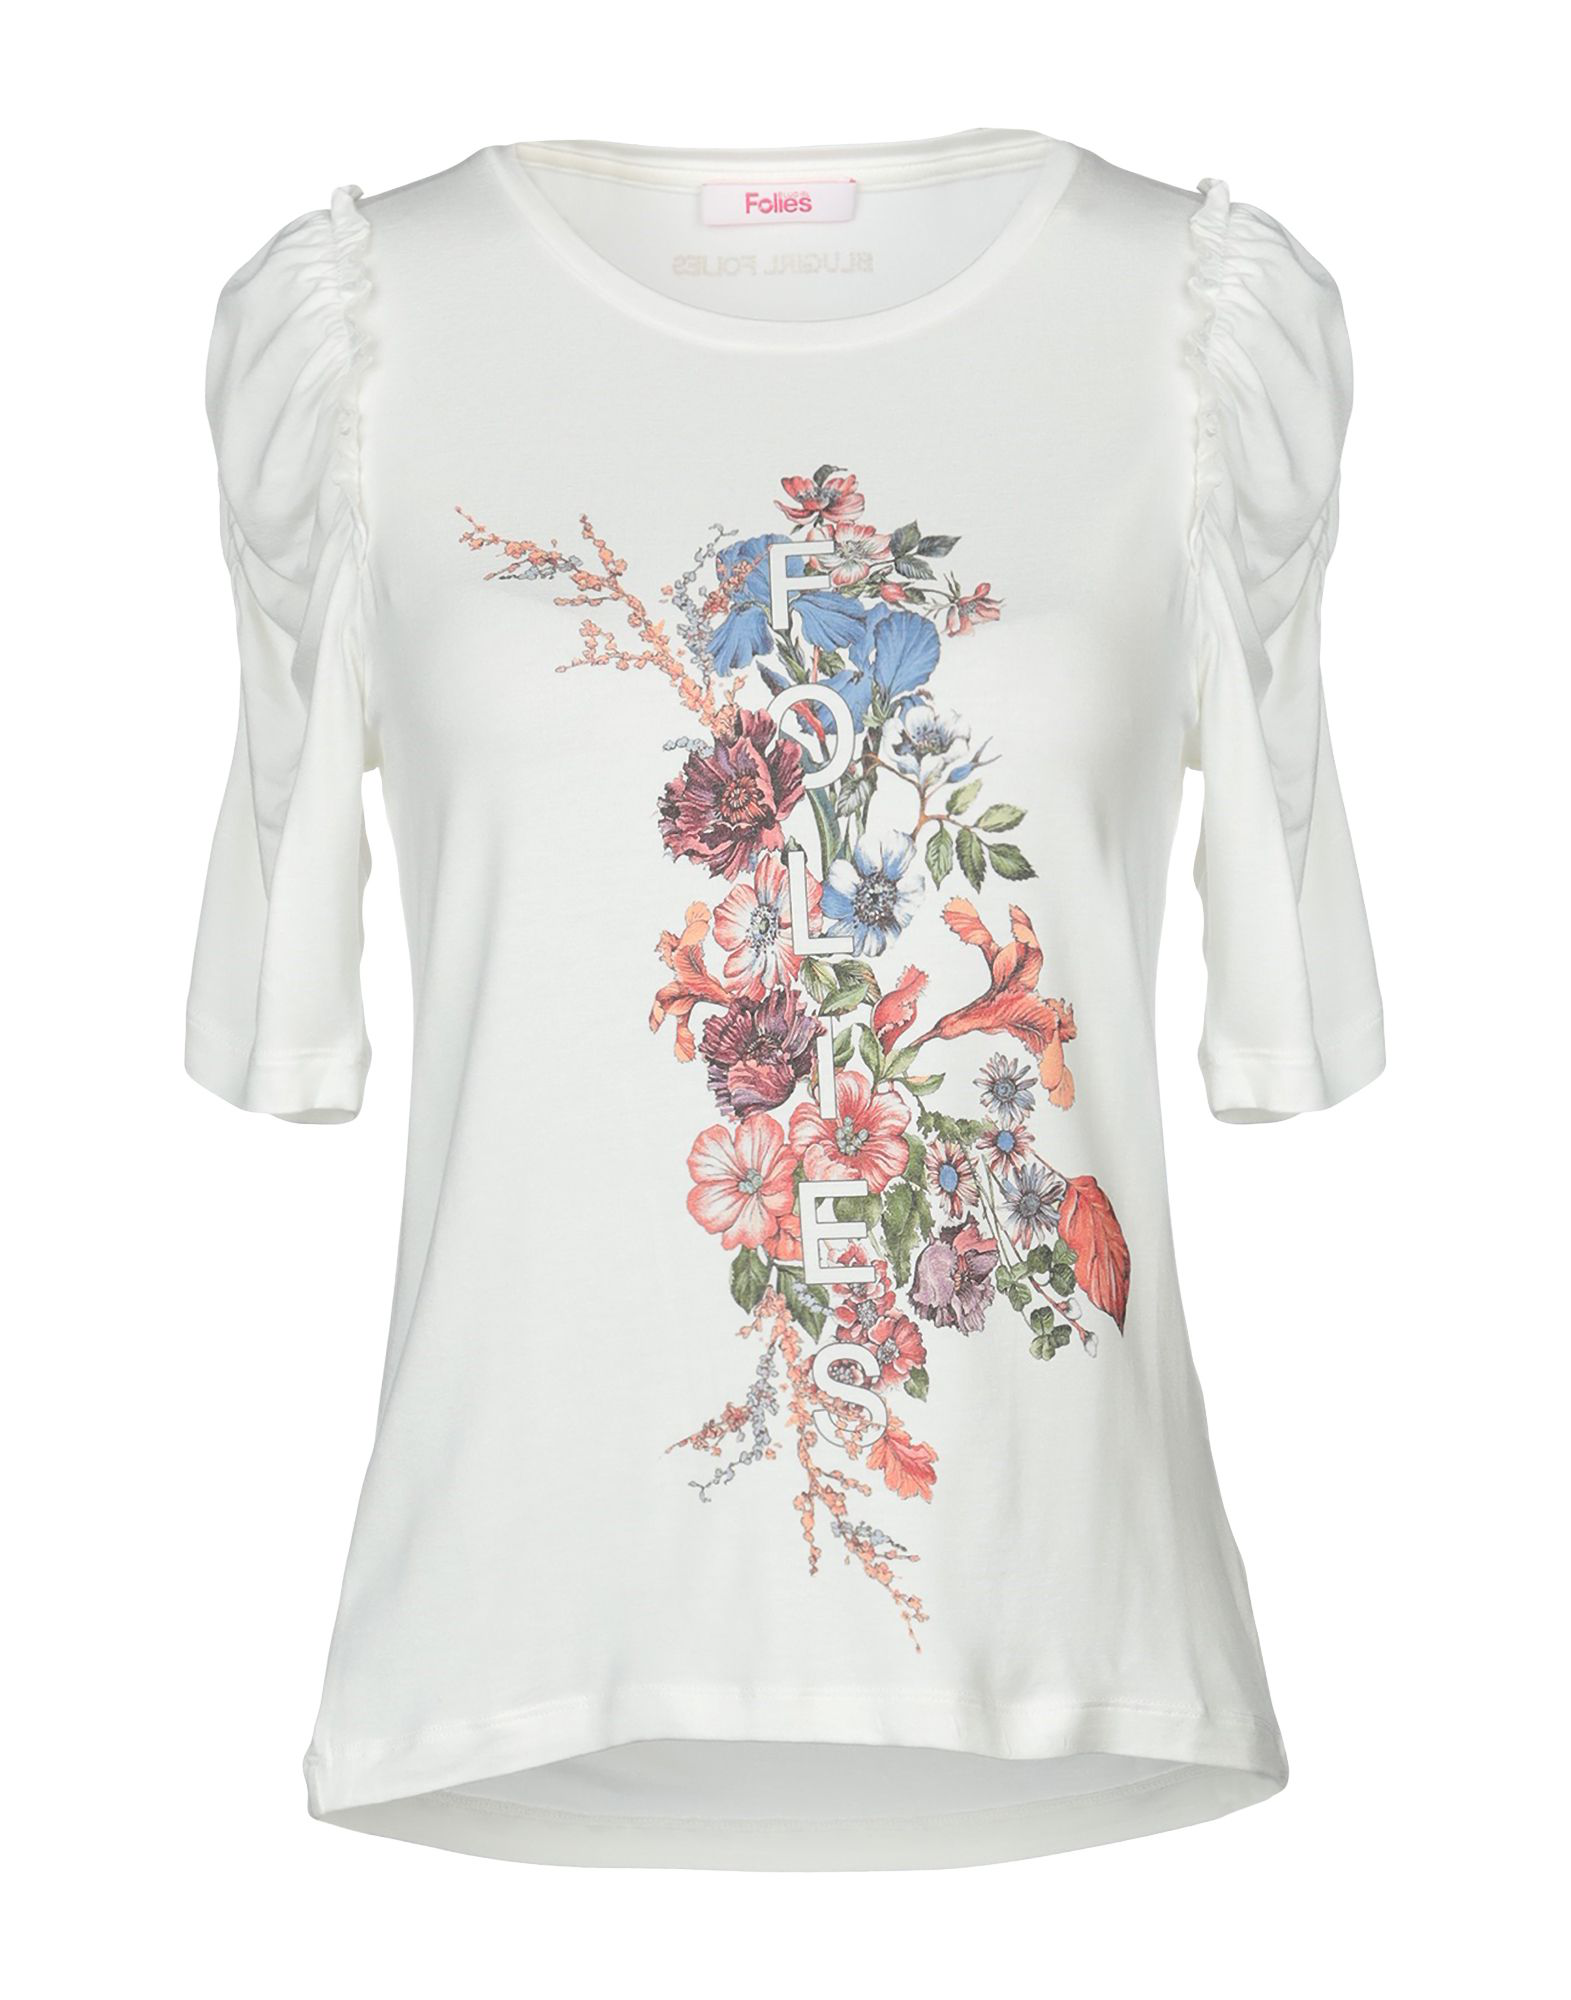 Blugirl Folies T-shirt In Ivory | ModeSens